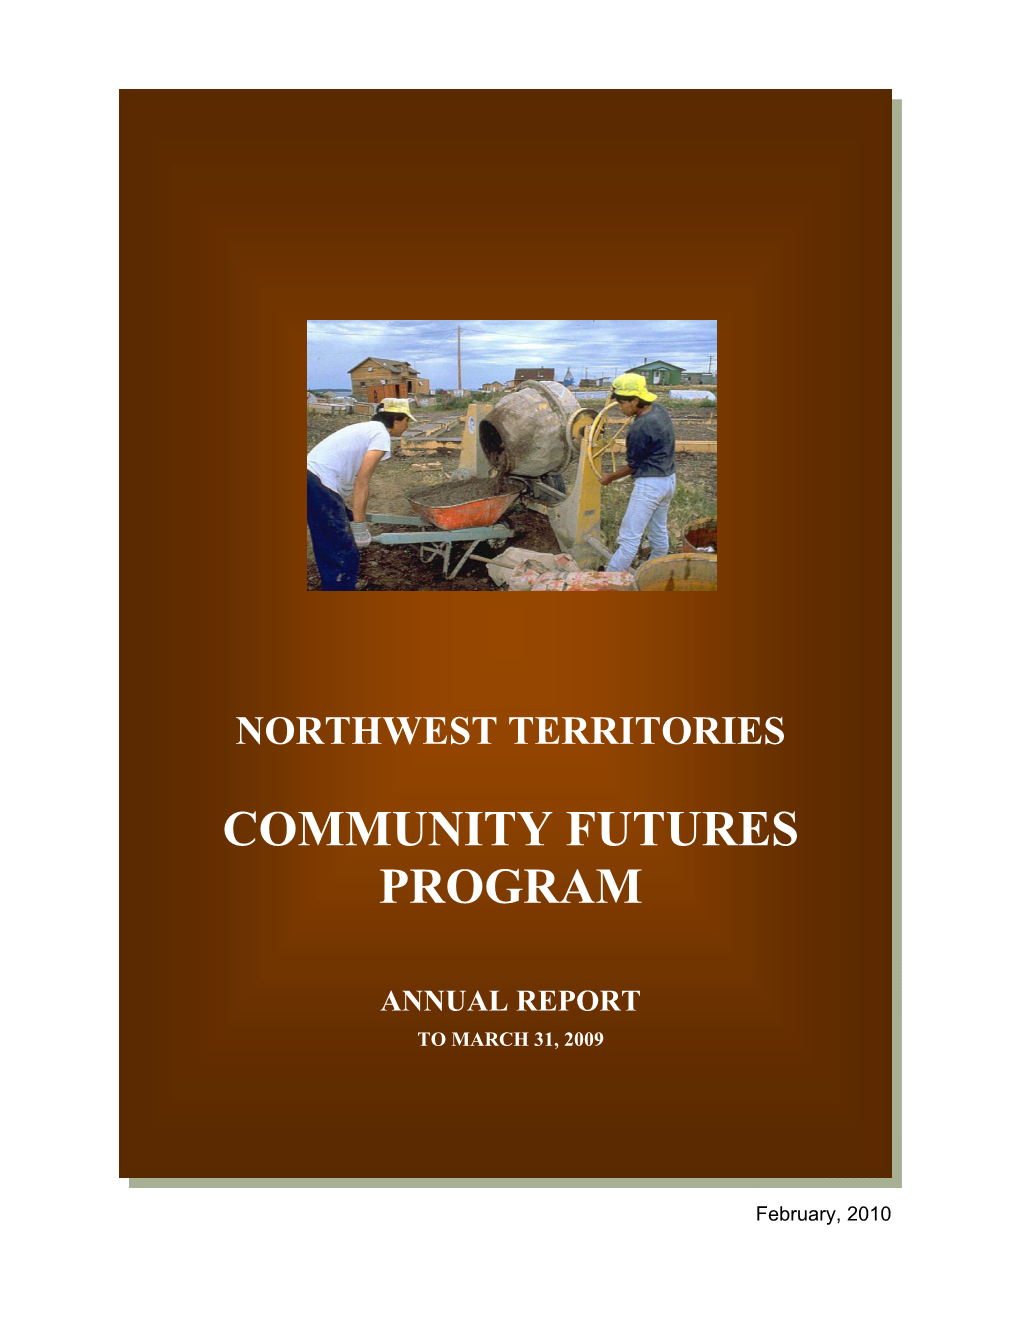 Community Futures Program